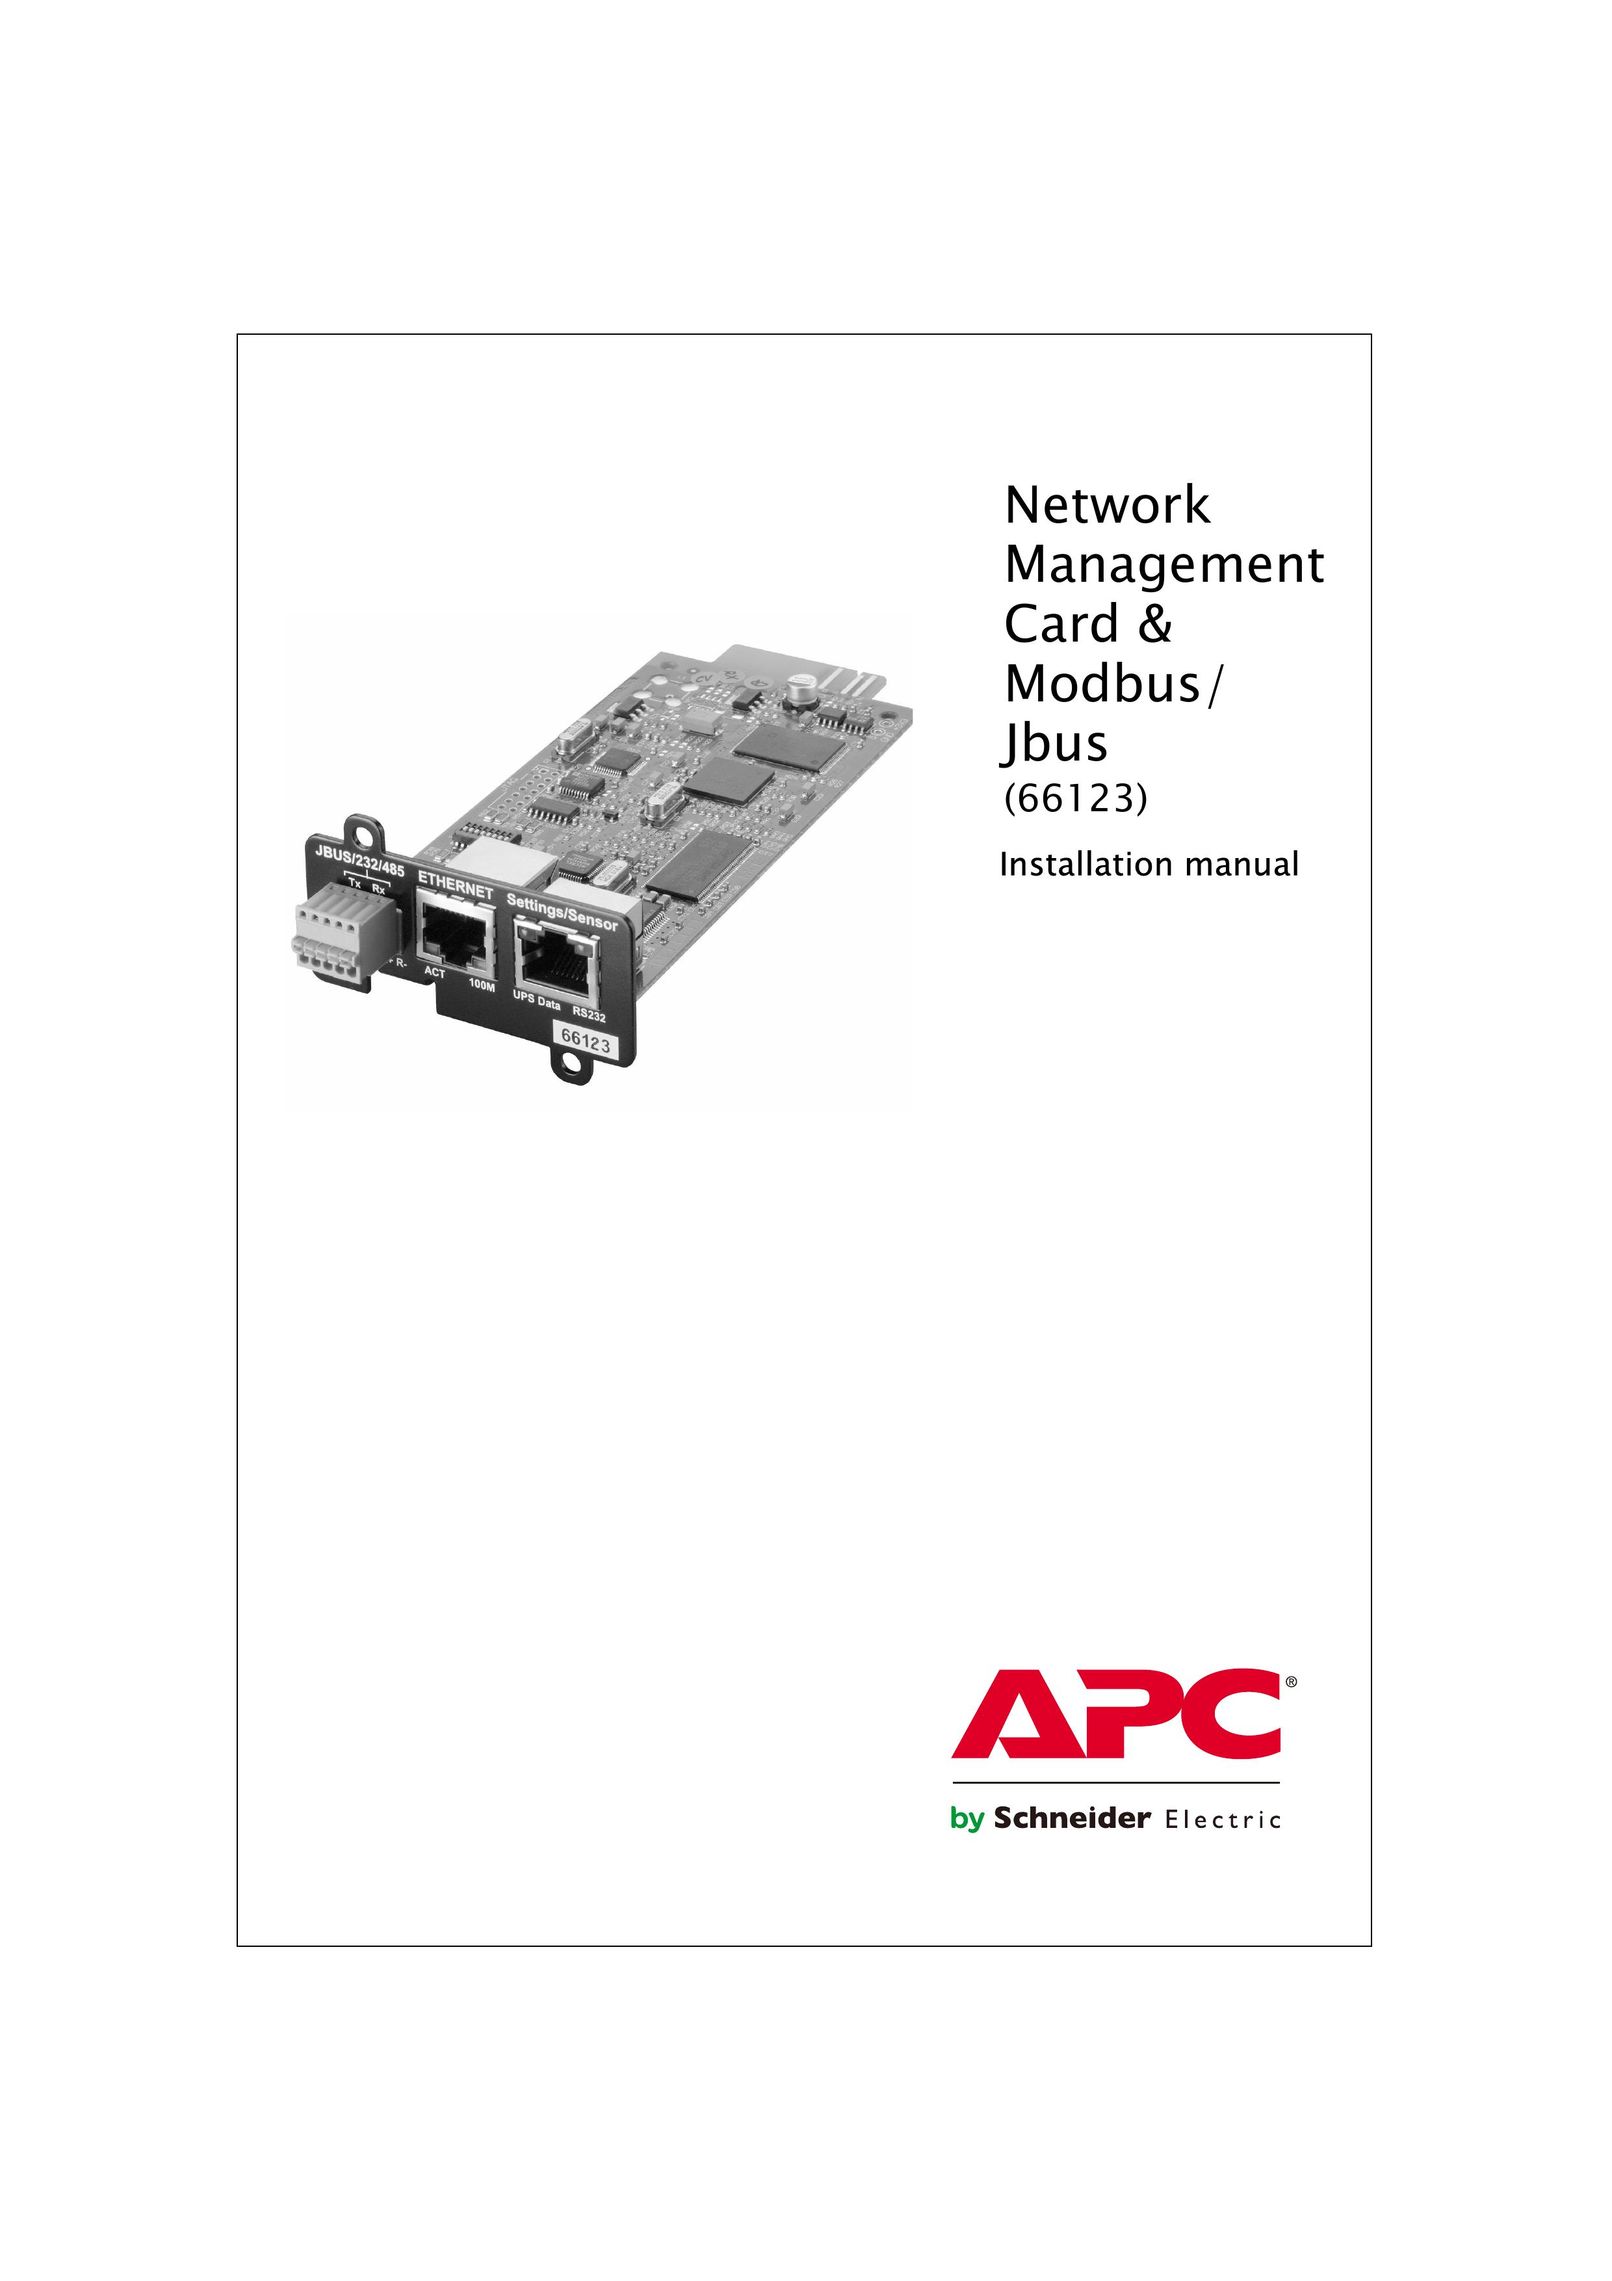 APC 66123 Network Card User Manual